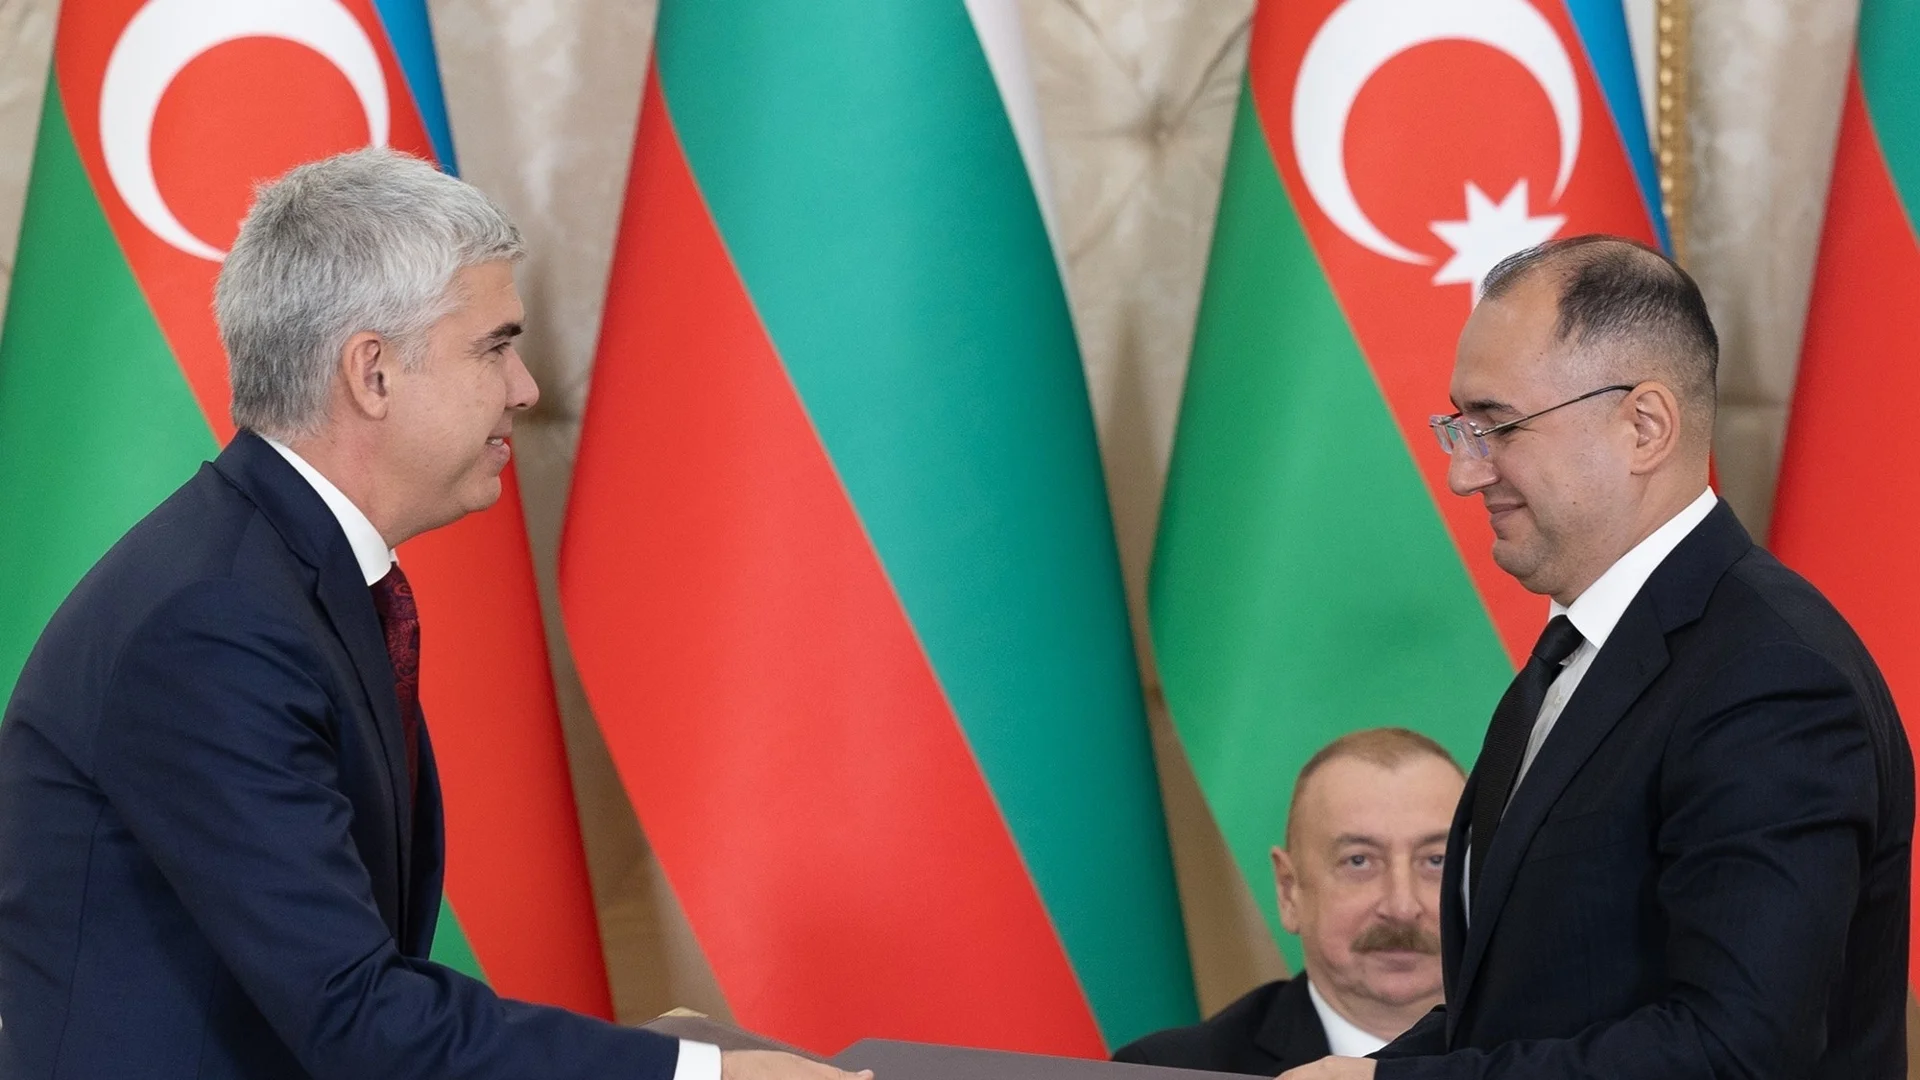 Азербайджан е готов да доставя допълнителни количества природен газ за България